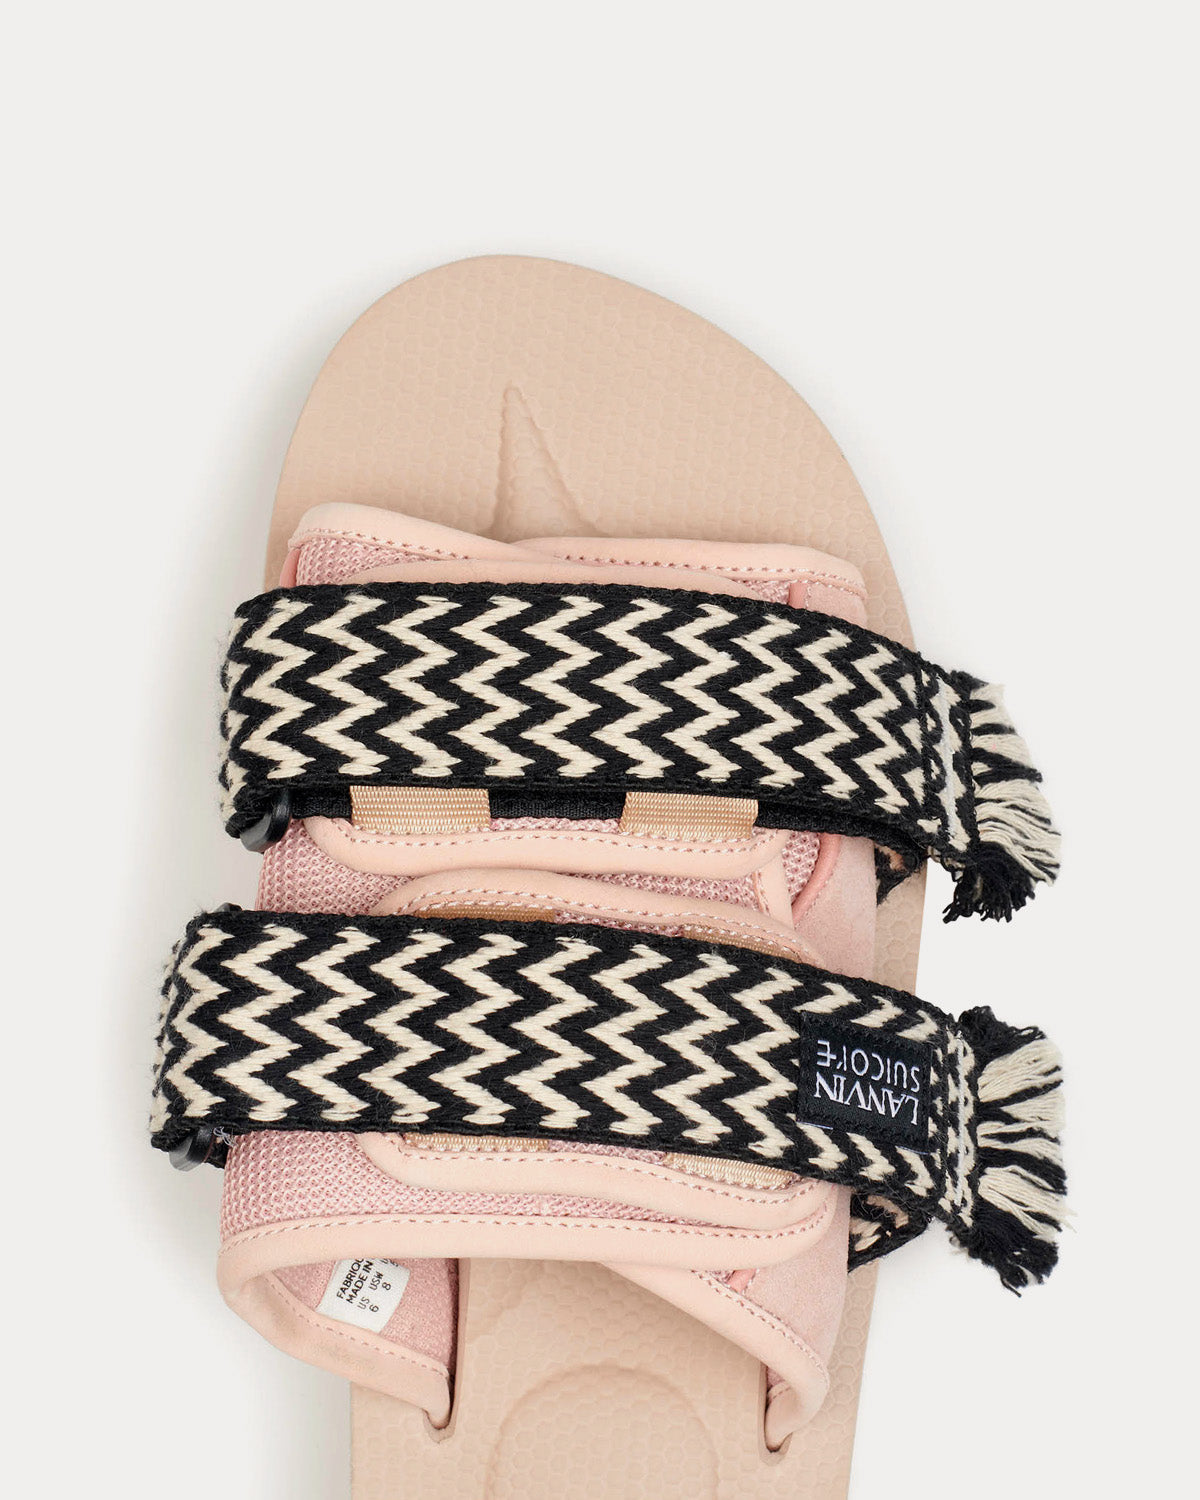 Lanvin x Suicoke - Pale Pink Nubuck Sandals